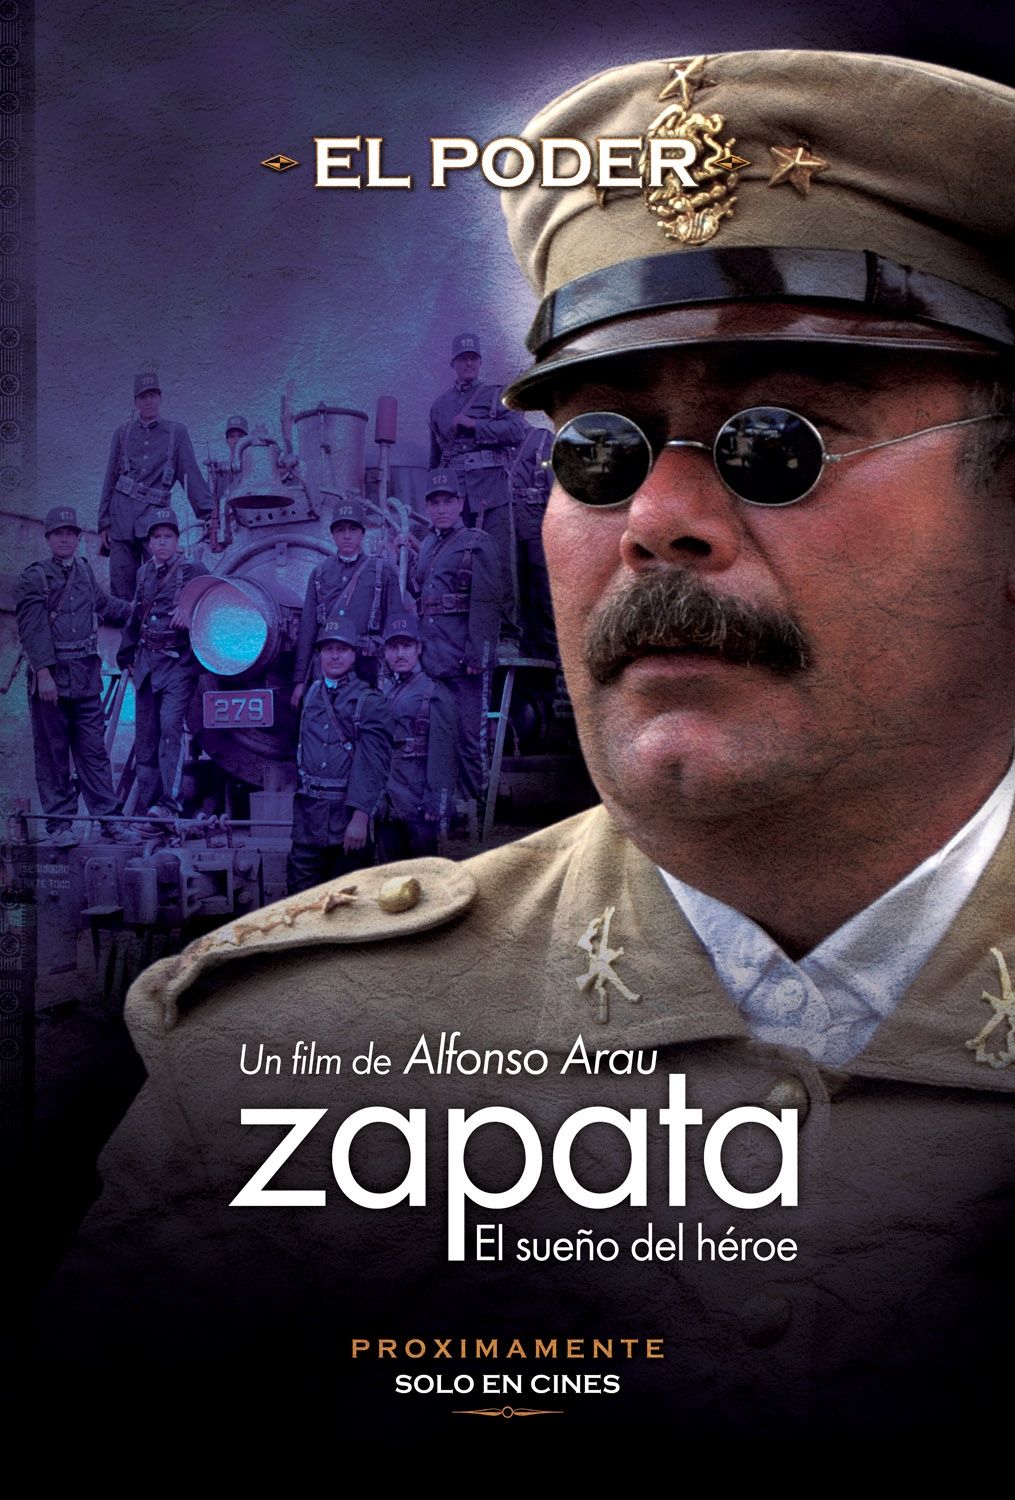 Extra Large Movie Poster Image for Zapata - El sueño del héroe (#4 of 6)